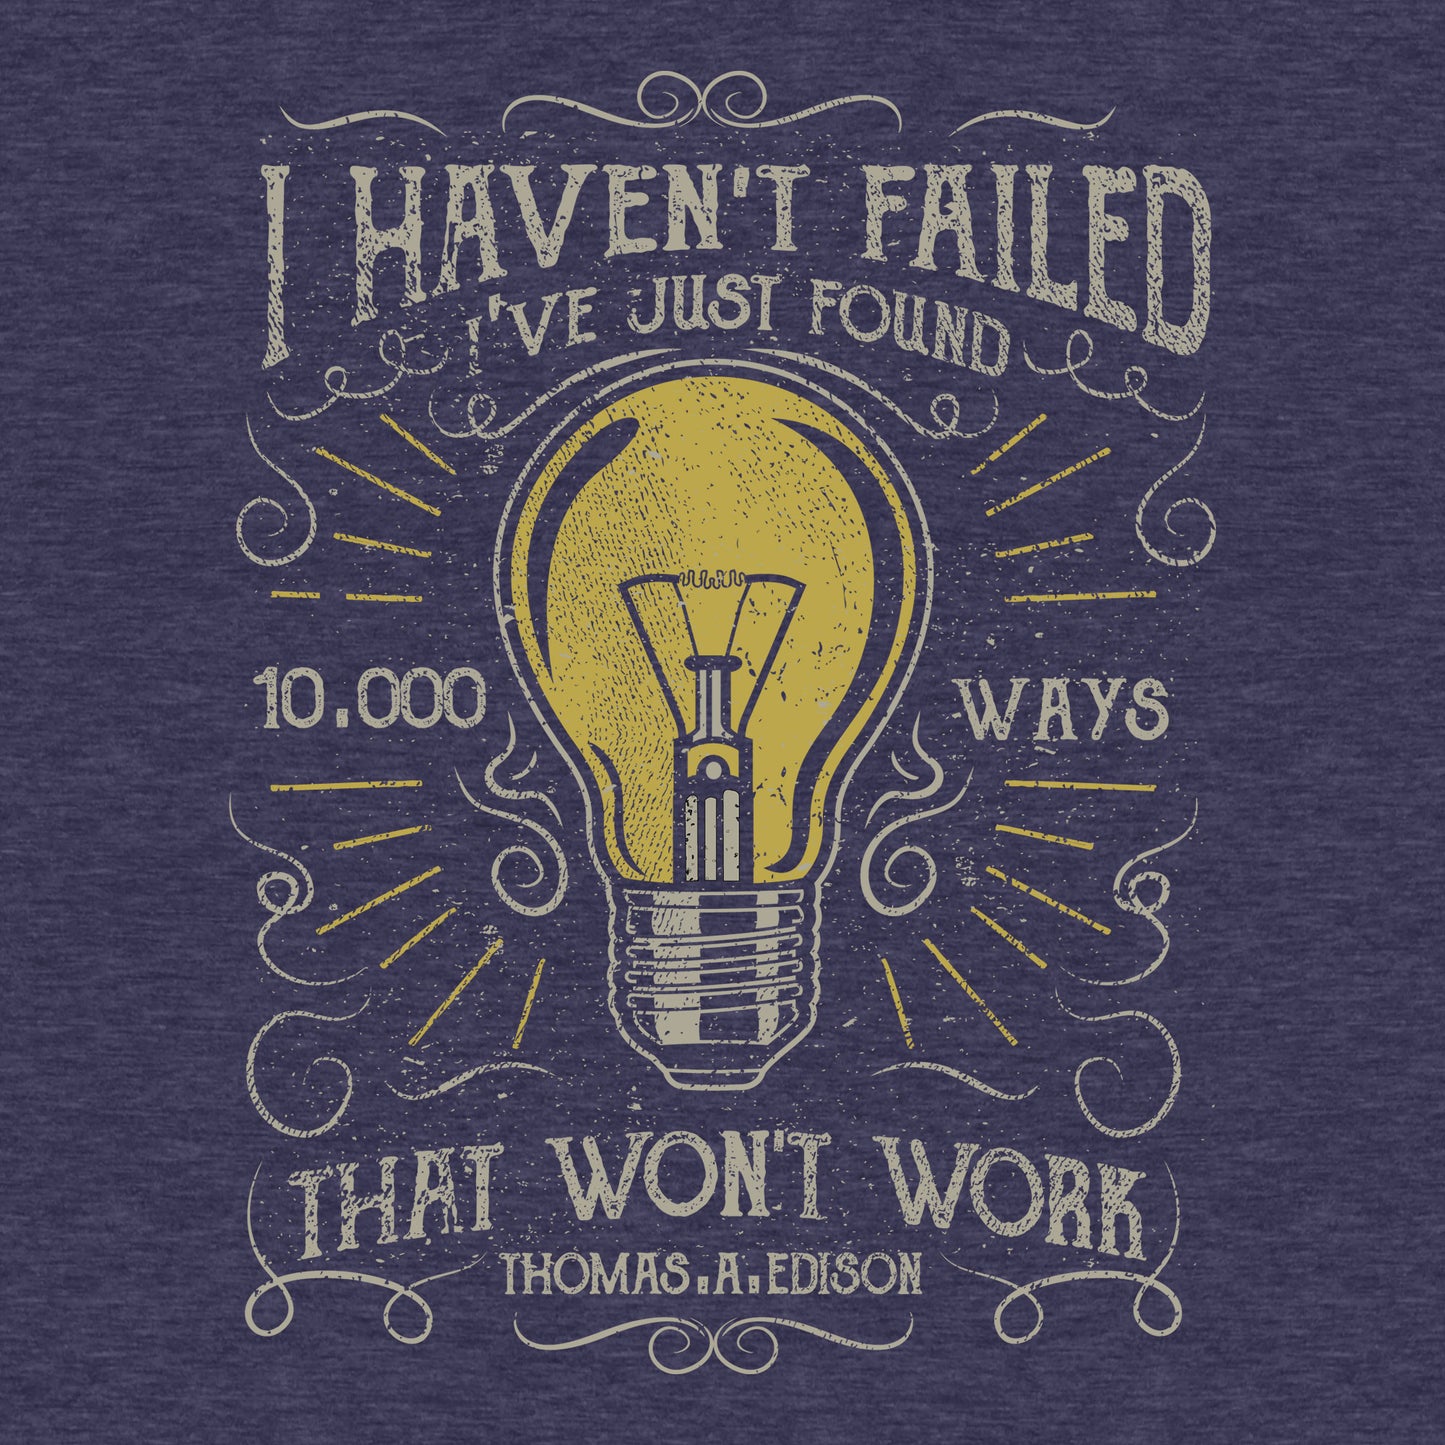 Thomas Edison Quote on Failure - Men's Cotton/Poly Tee